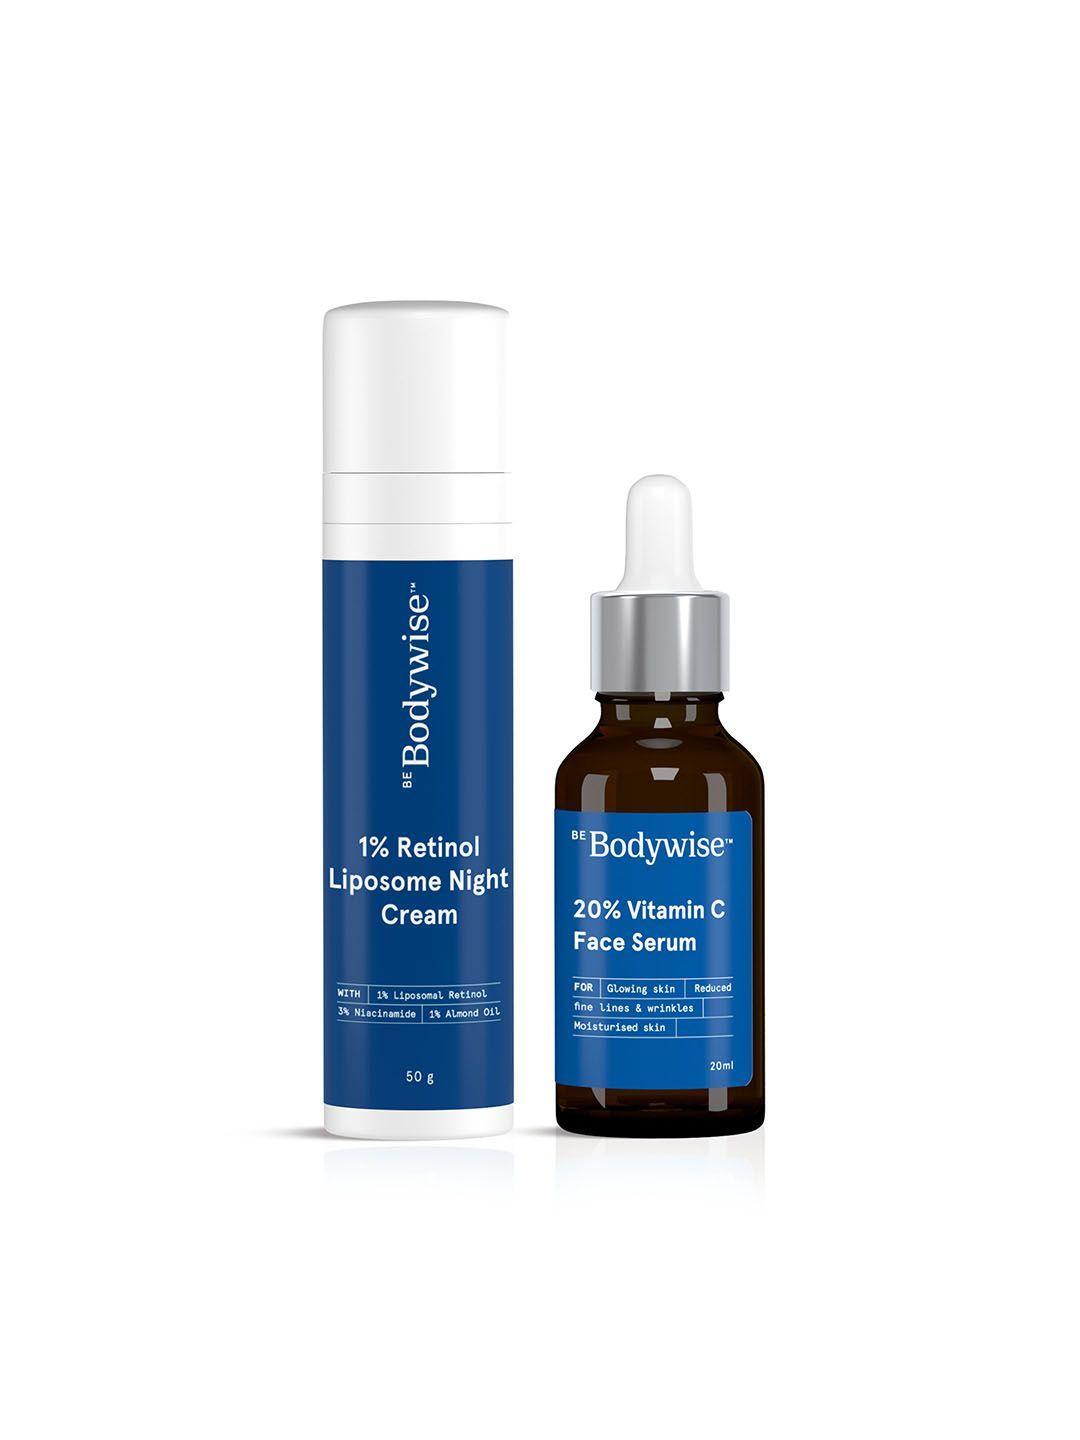 be bodywise skin illuminating kit with retinol liposome night cream & vitamin c serum